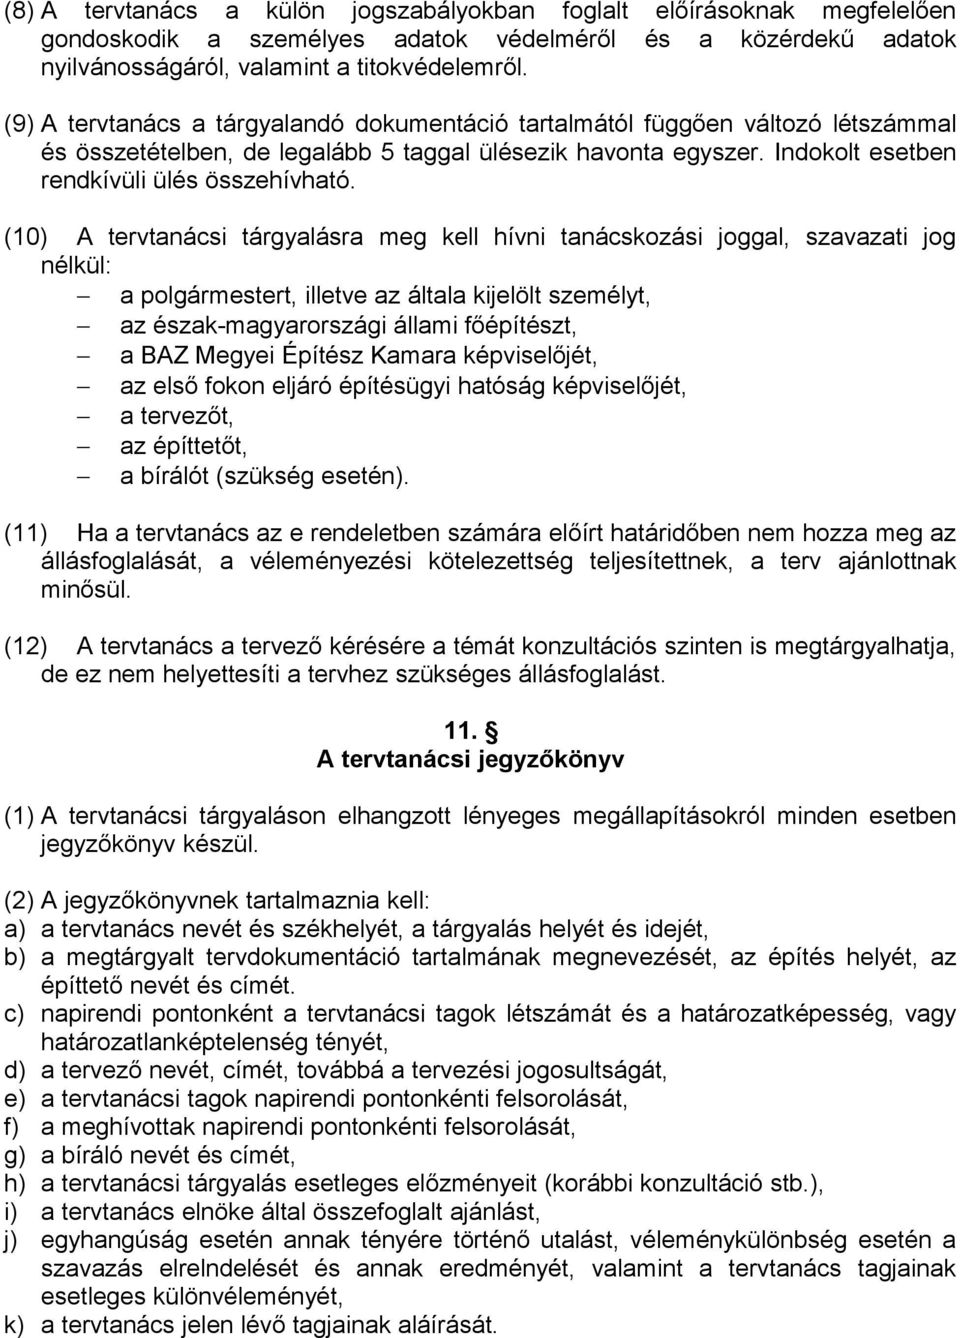 (10) A tervtanácsi tárgyalásra meg kell hívni tanácskozási joggal, szavazati jog nélkül: a polgármestert, illetve az általa kijelölt személyt, az észak-magyarországi állami főépítészt, a BAZ Megyei